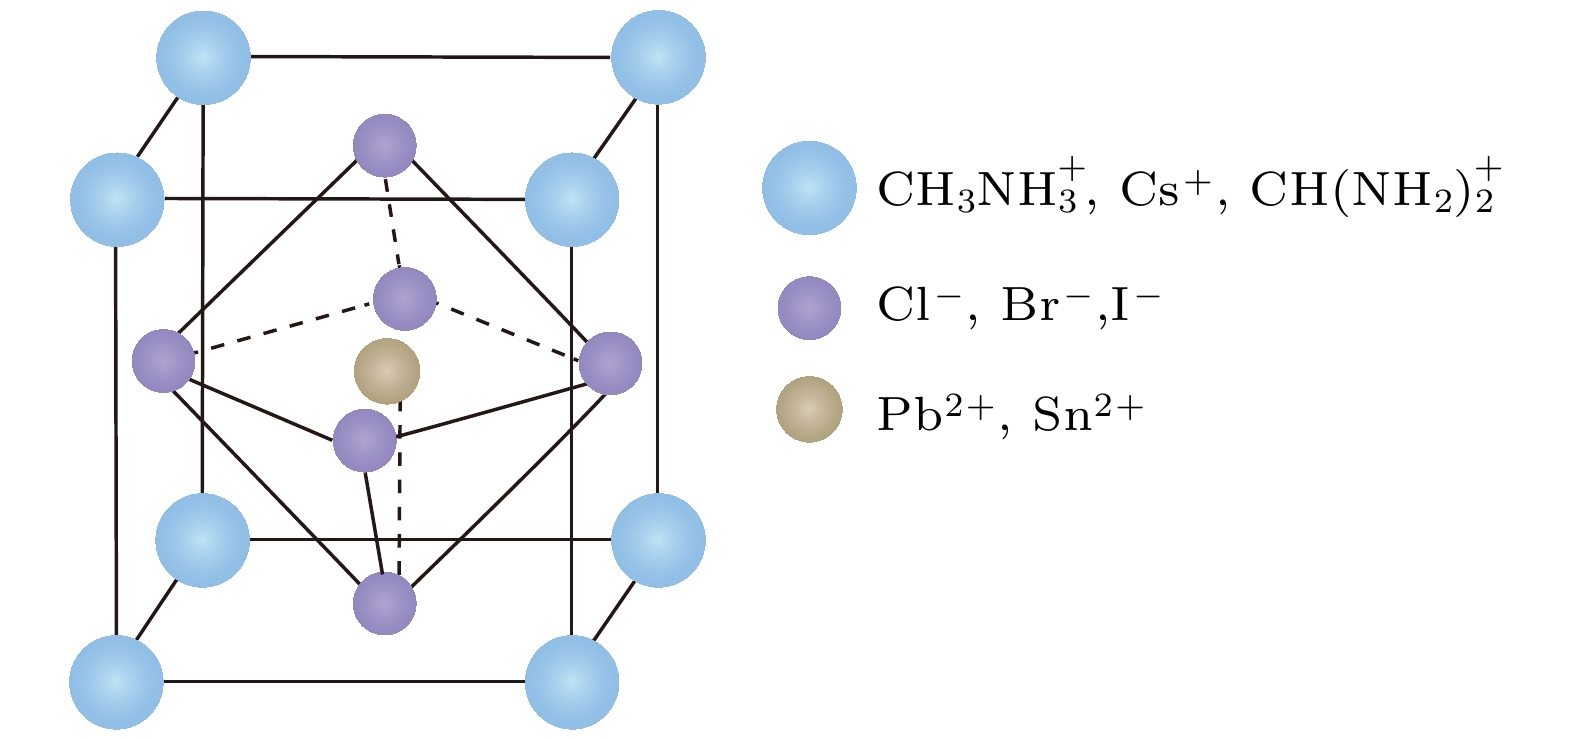 钙钛矿是一类性能优异的新型半导体光电材料, 其三维晶体结构分子式